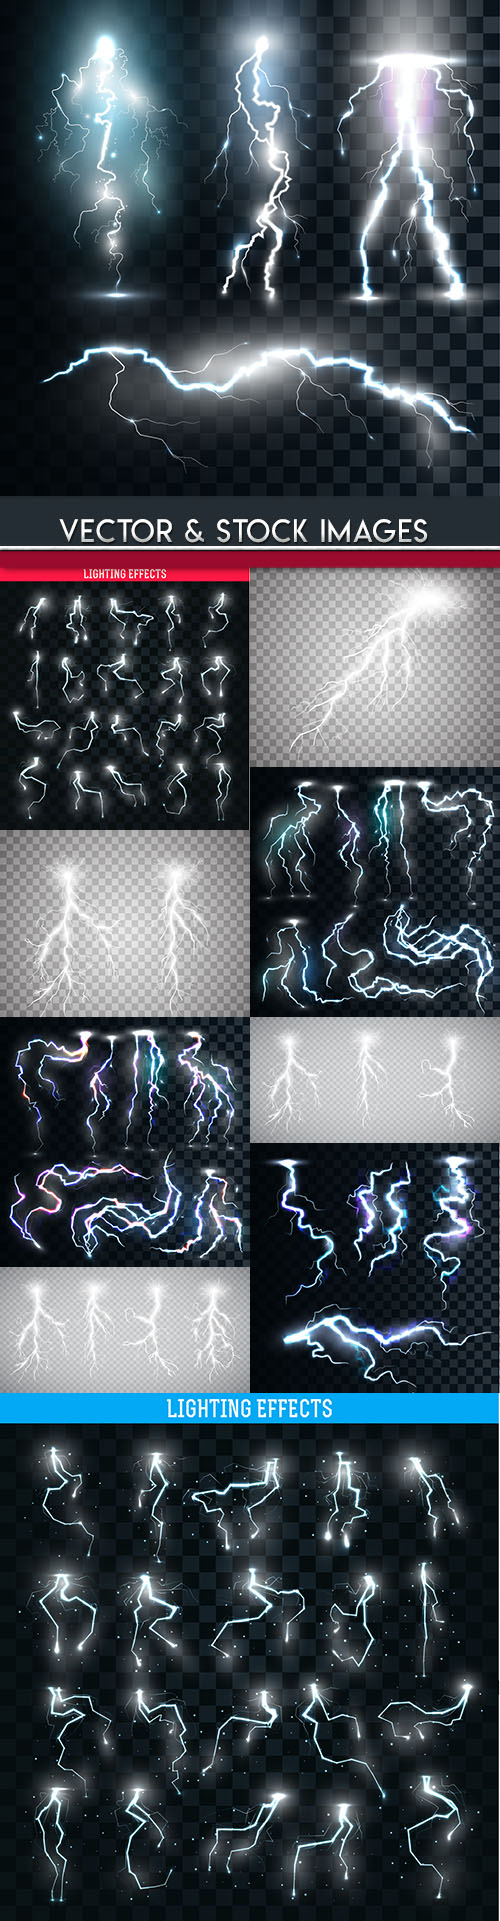 Lightning natural and light effects design illustration